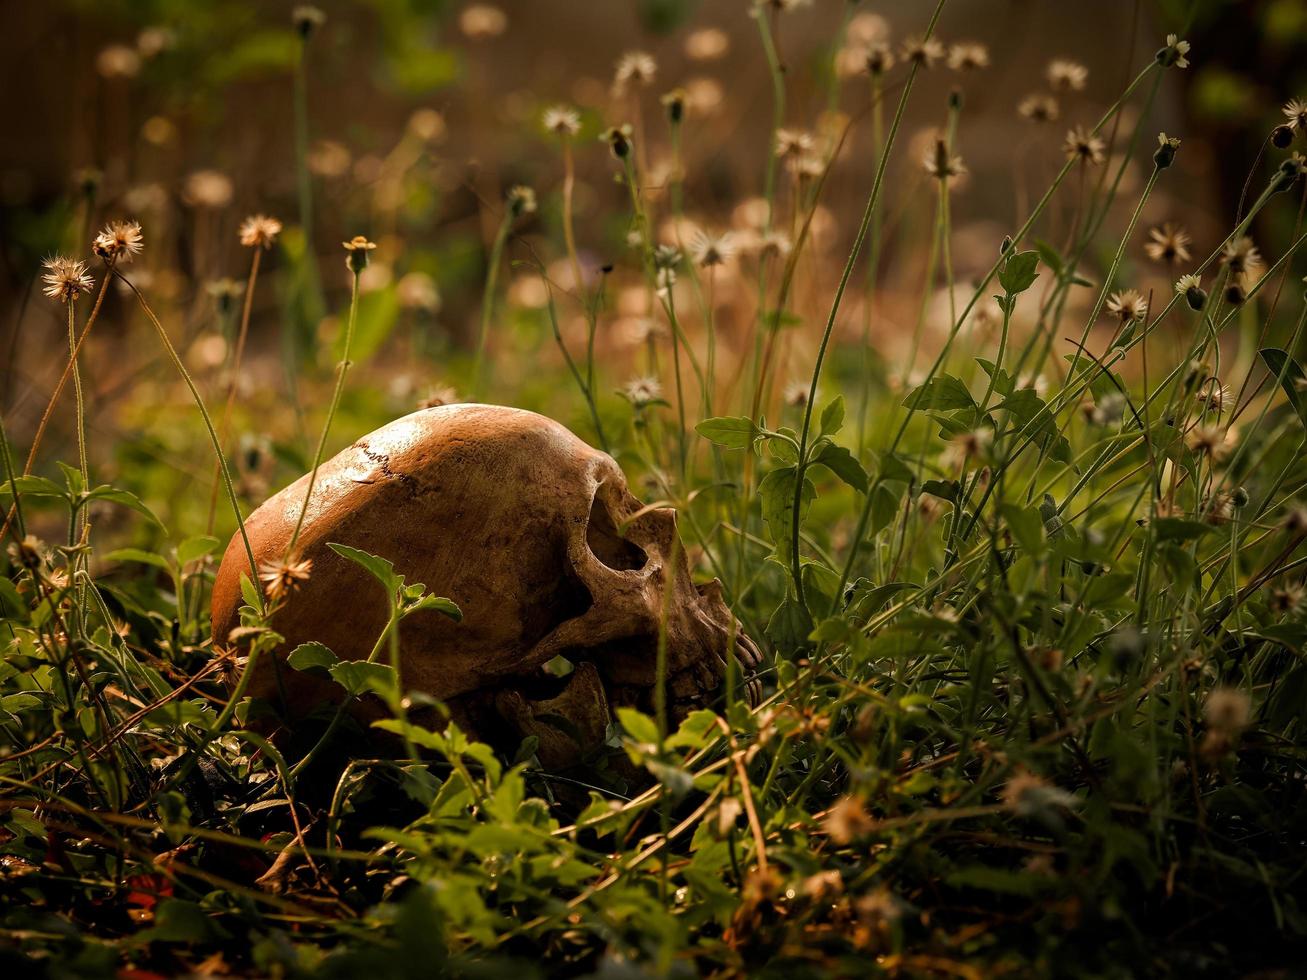 la nature morte d'un long crâne humain décédé, située au milieu d'une forêt photo